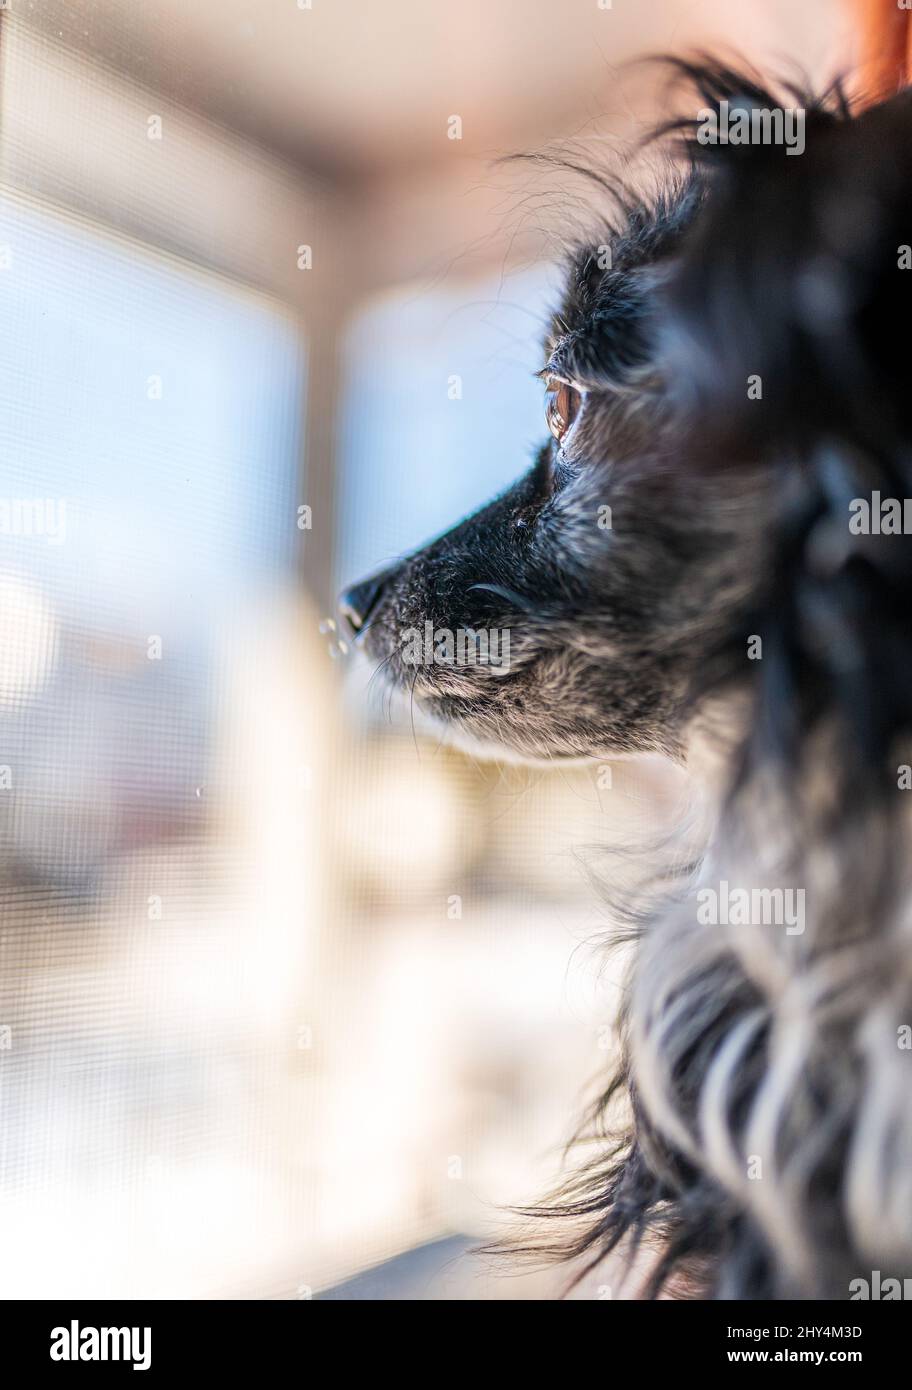 Vertikale Aufnahme des papillon-Hundes, der einen Blick von außen auf die Fenster werfen kann Stockfoto